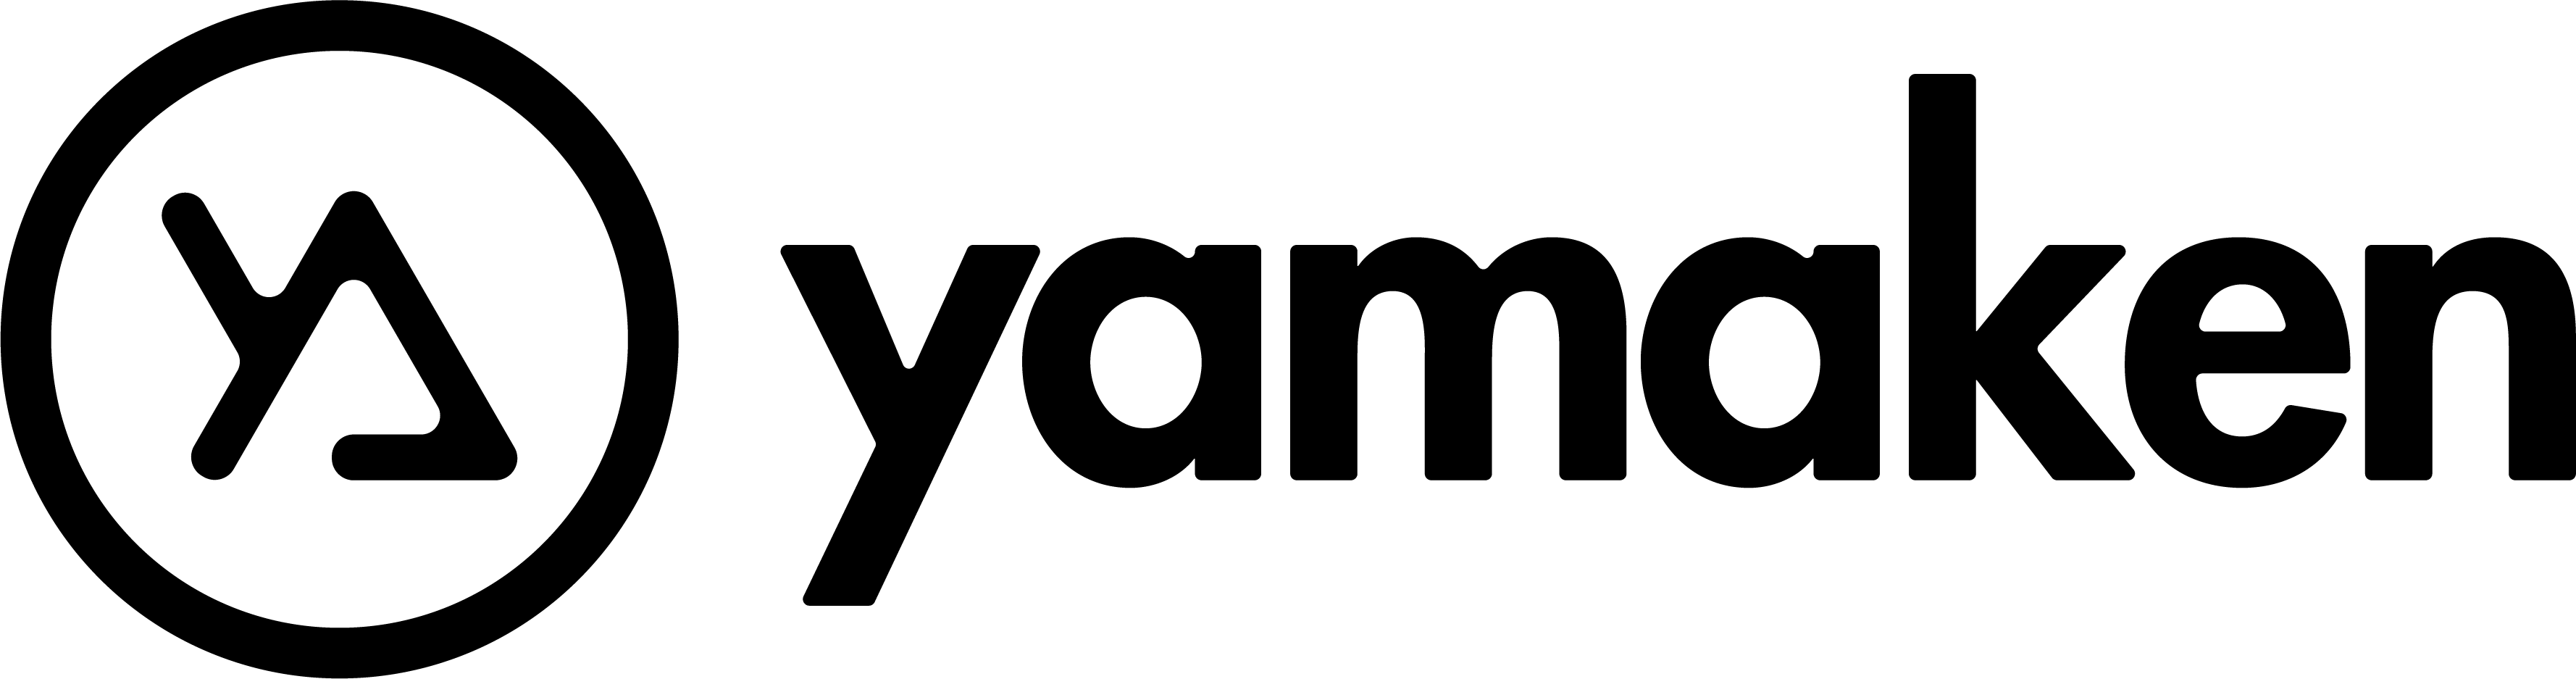 株式会社yamaken – 株式会社yamakenのホームページです